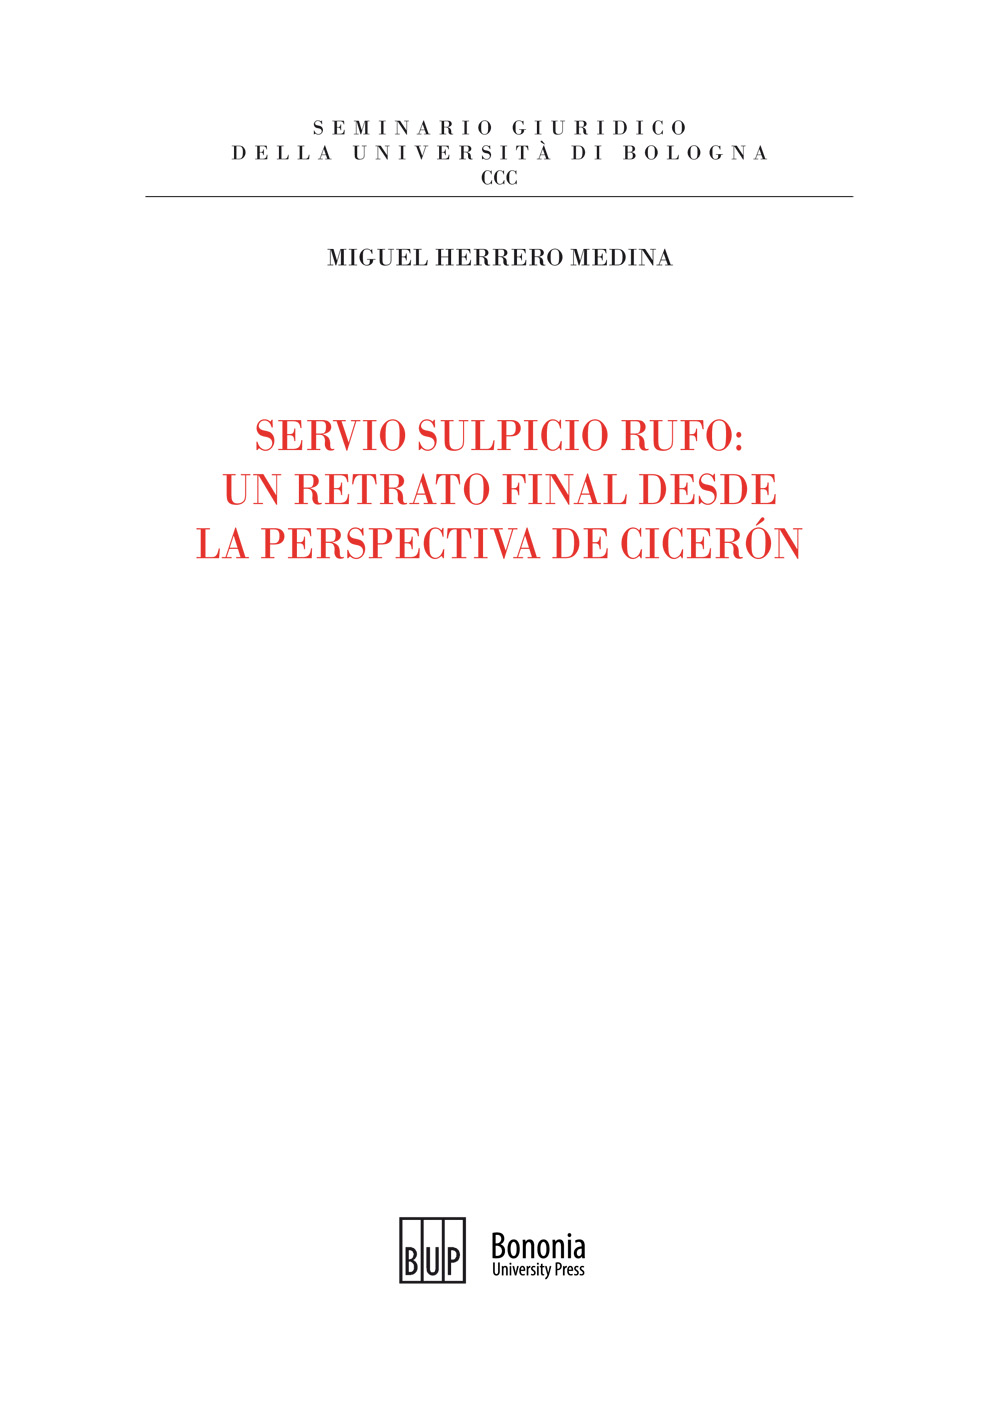 Imagen de portada del libro Servio Sulpicio Rufo